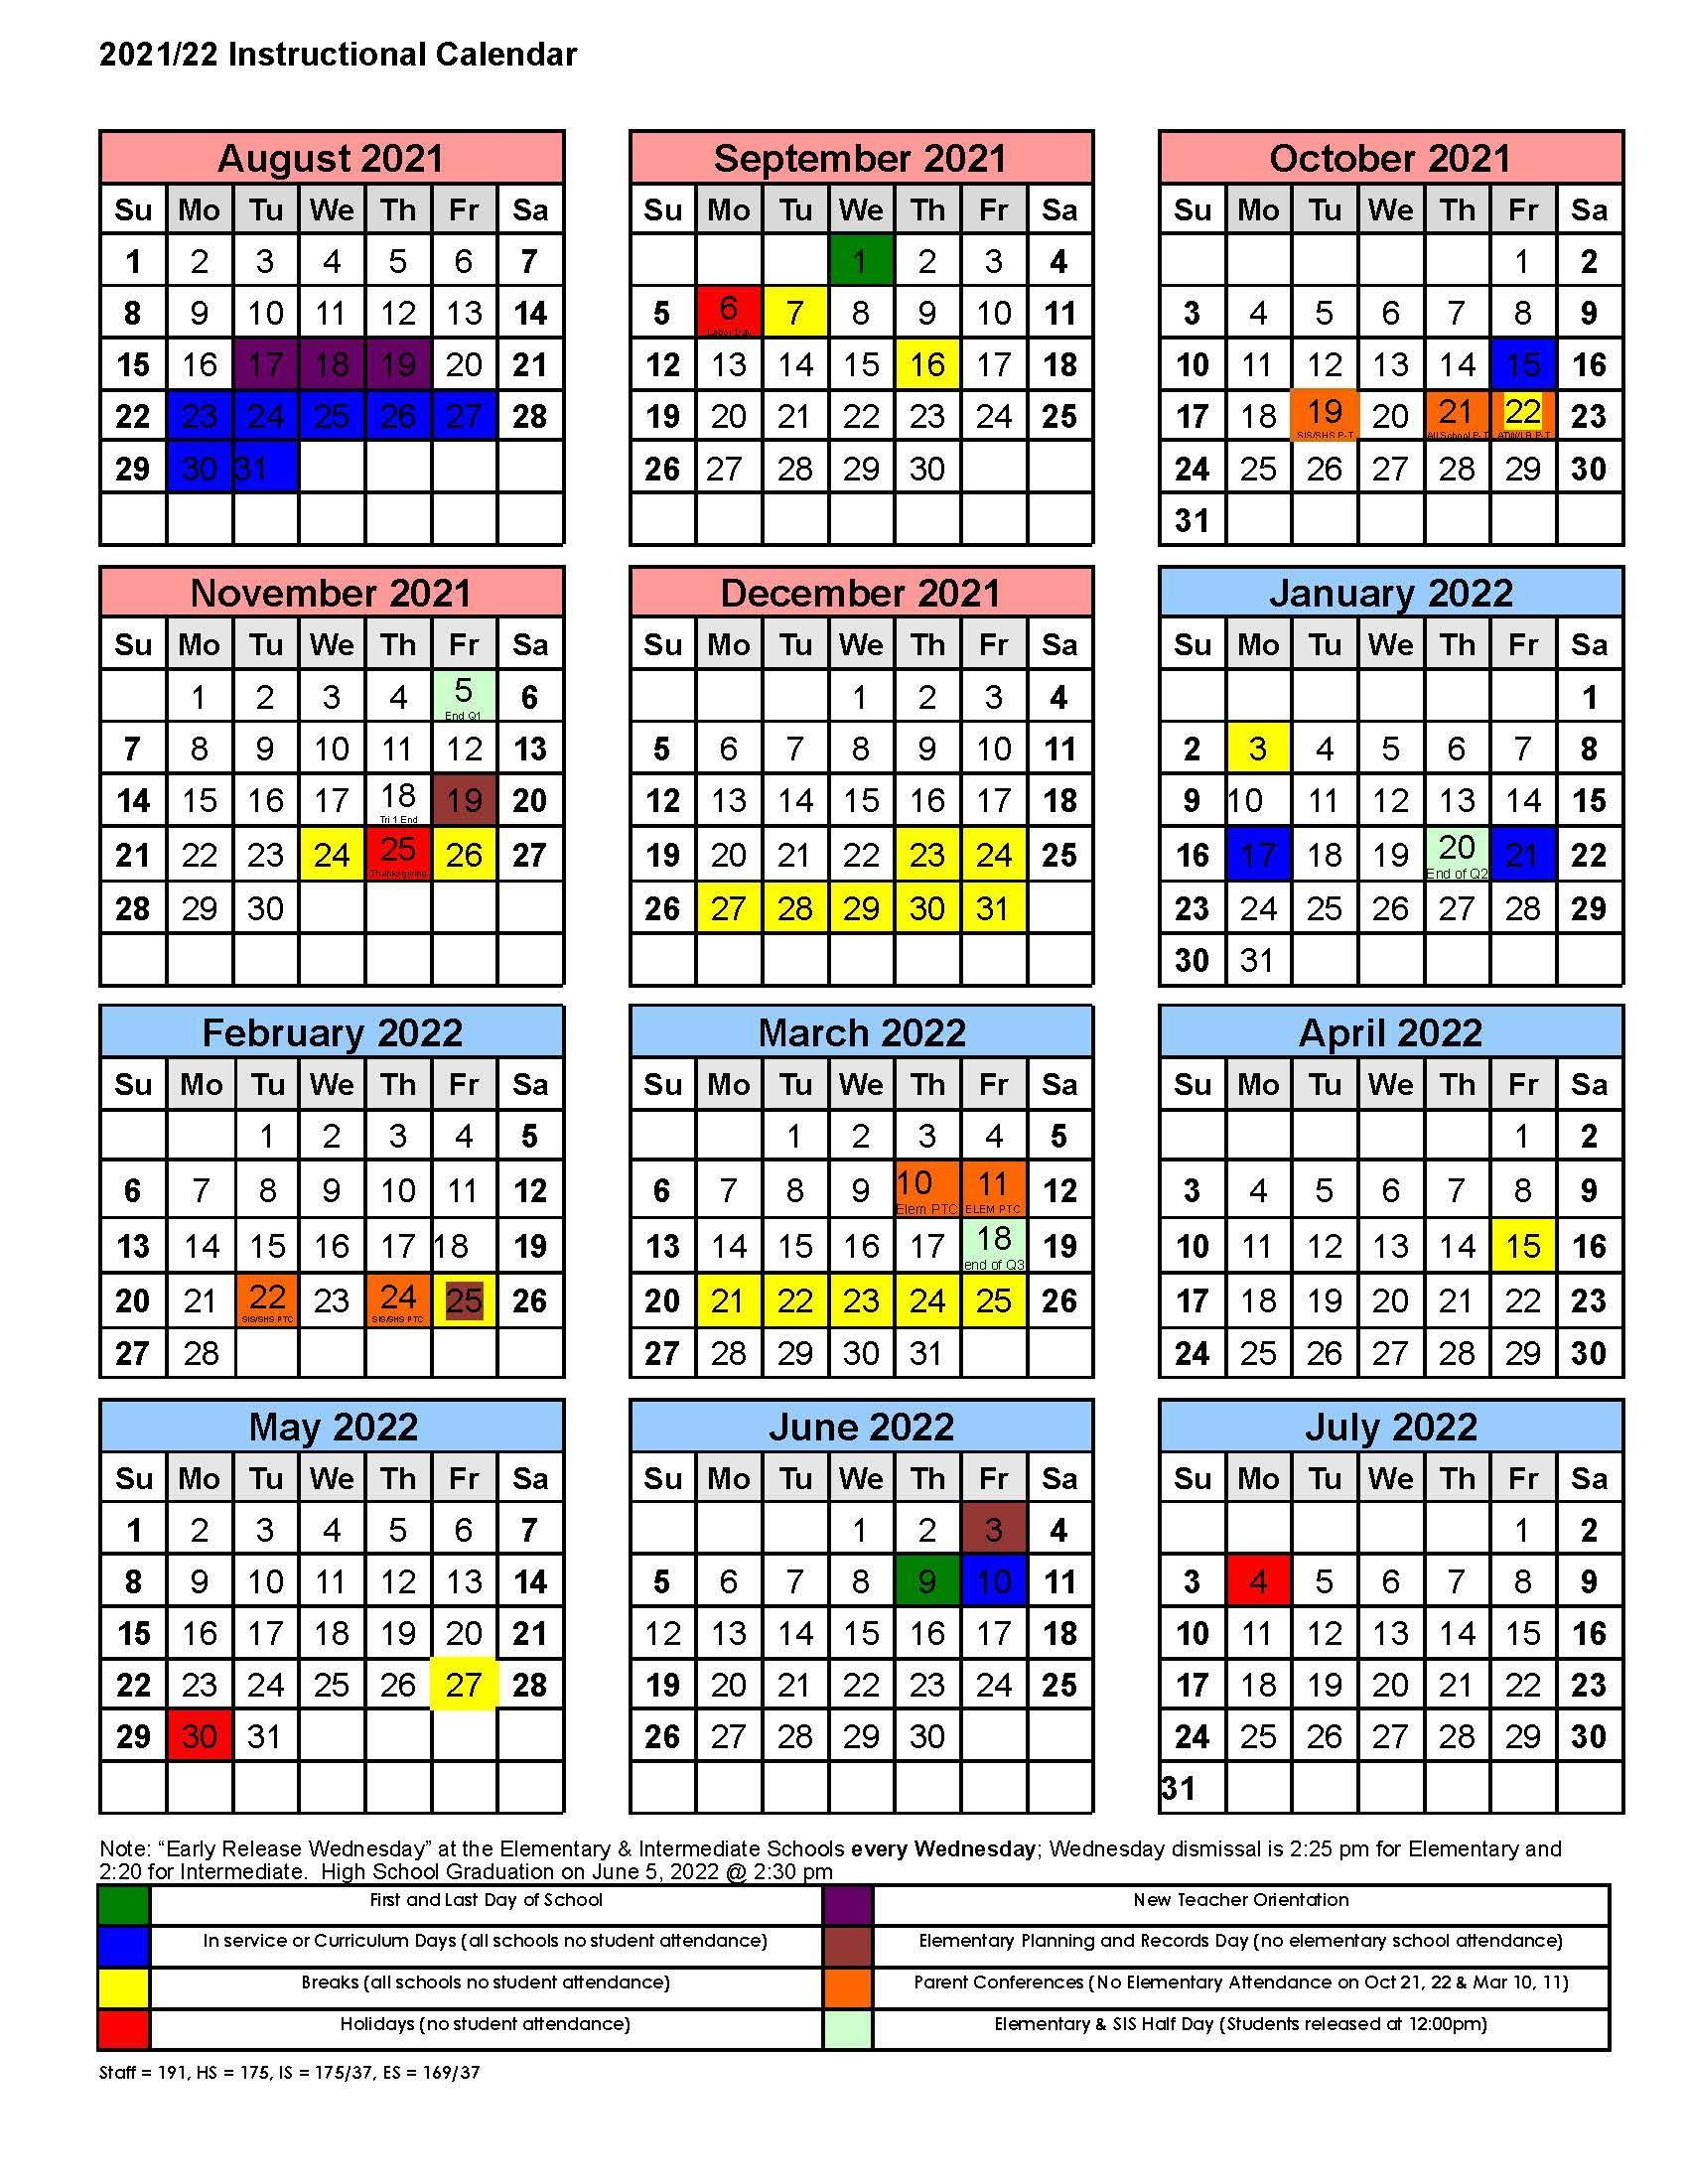 Amphitheater School District Calendar 2022 - Schoolcalendars.net